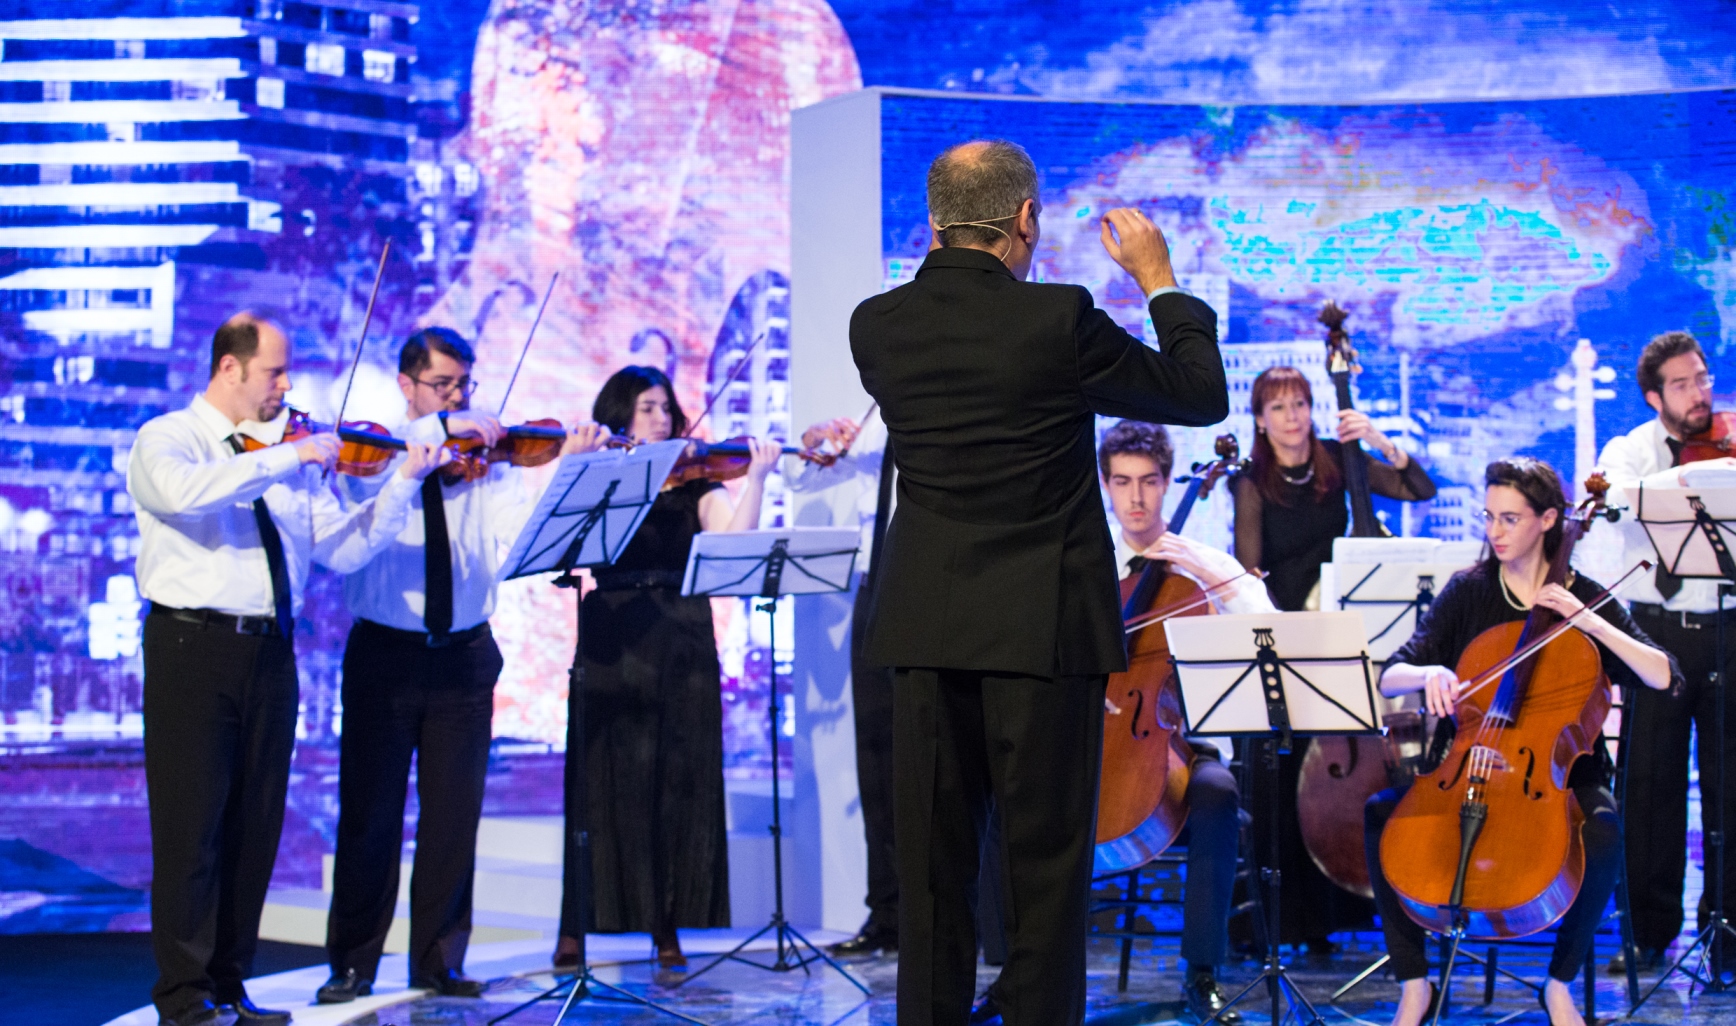 יצירתה הייחודית של נעמה פרל לתזמורת מיתרים, שמפגישה בין הצלילים העממיים של תימן עליהם גדלה, לבין עולם התזמור המערבי 